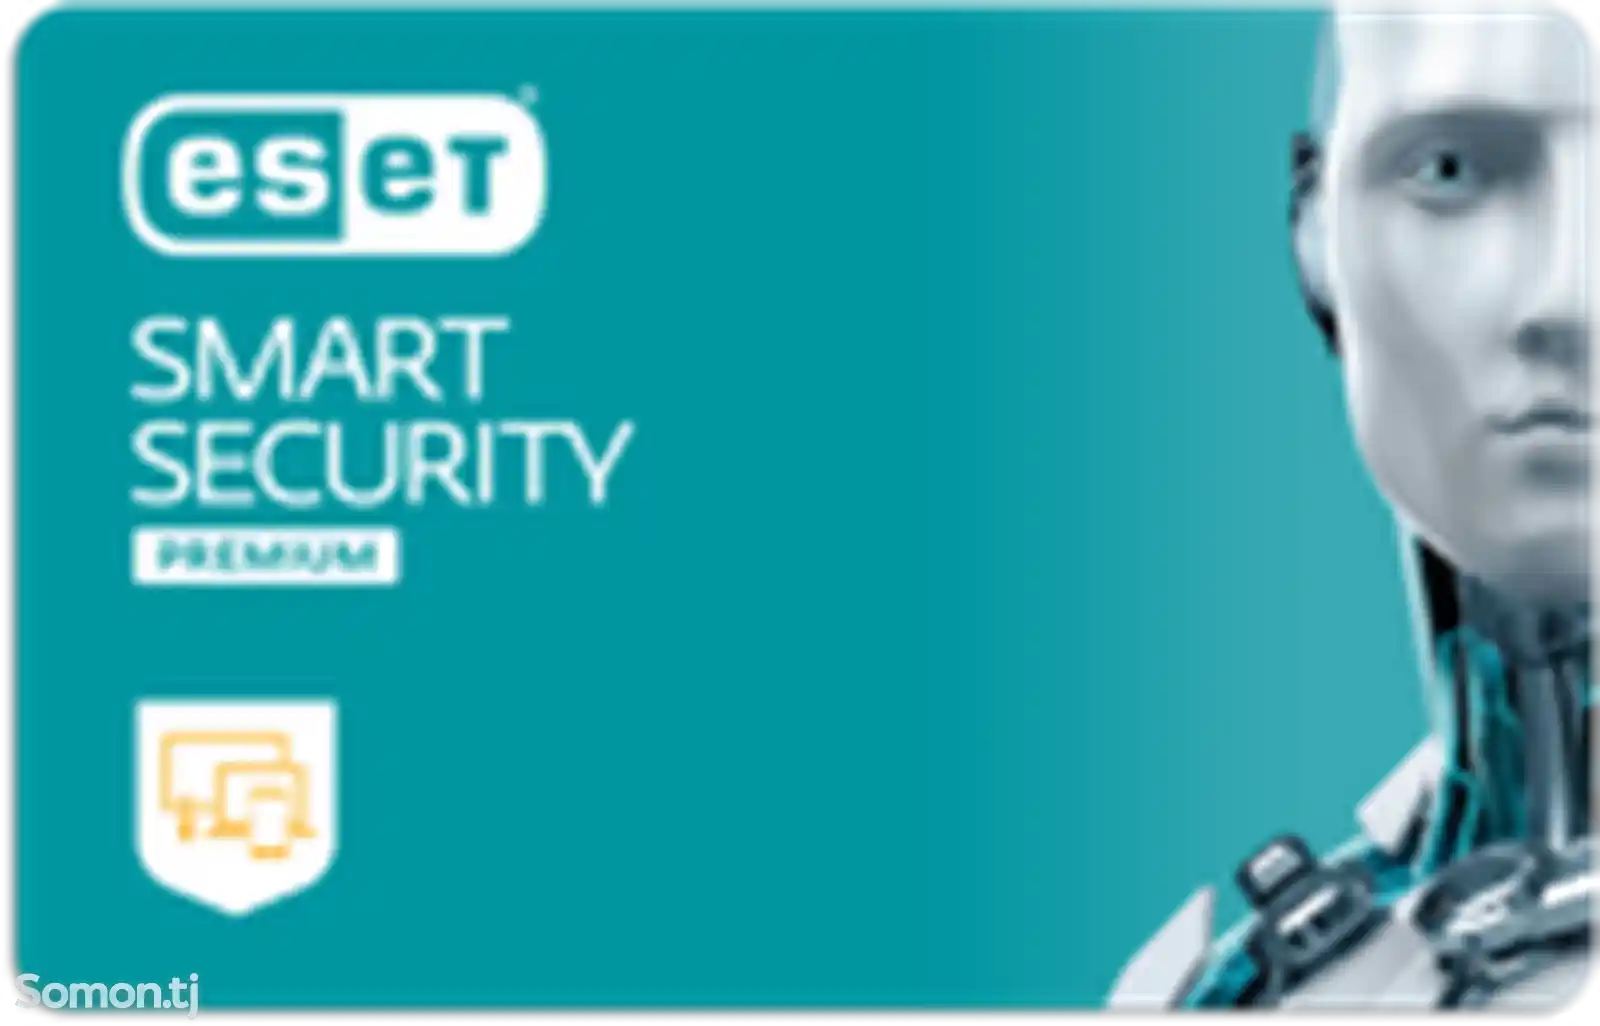 ESET Smart Security Premium - иҷозатнома барои 5 роёна, 1 сол-1